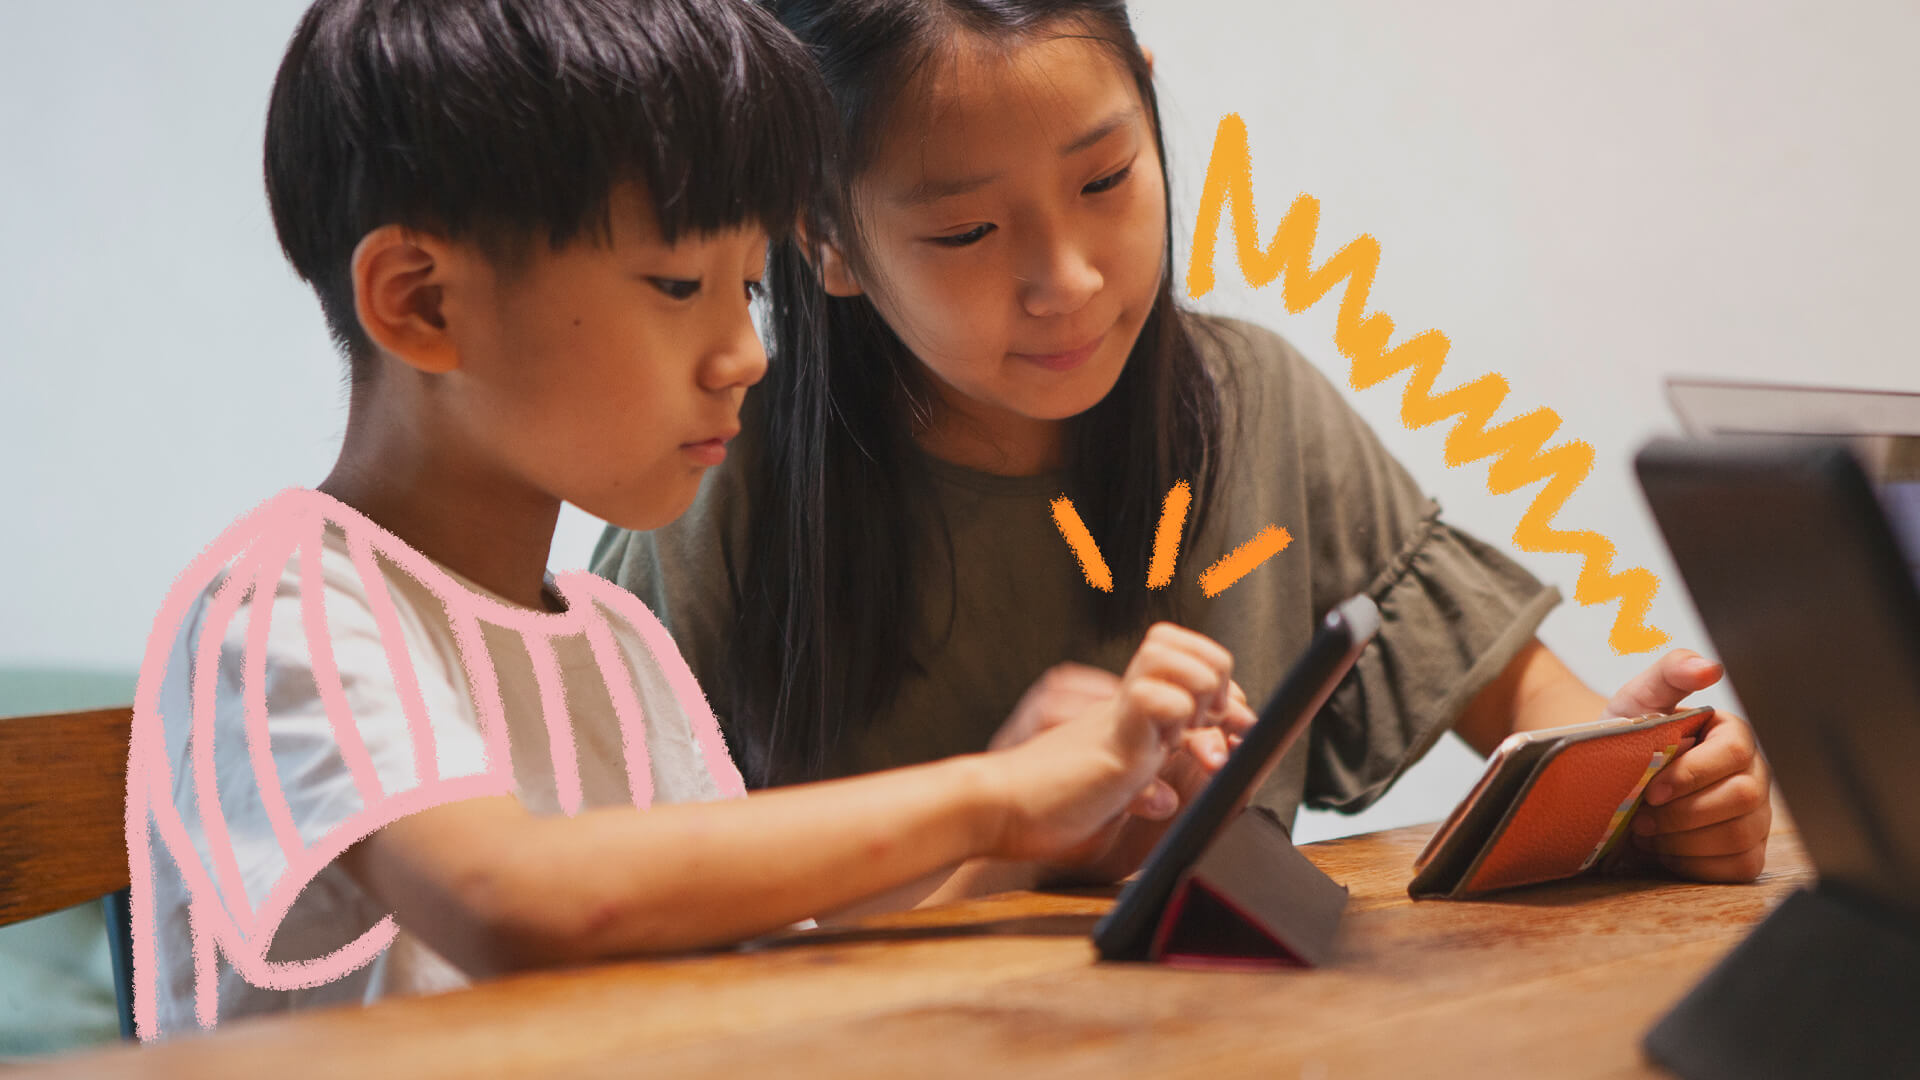 Conheça 5 aplicativos para aprimorar a aprendizagem infantil: na foto, duas crianças asiáticas olham para telas de tablet e celular. A imagem possui intervenções de rabiscos coloridos.